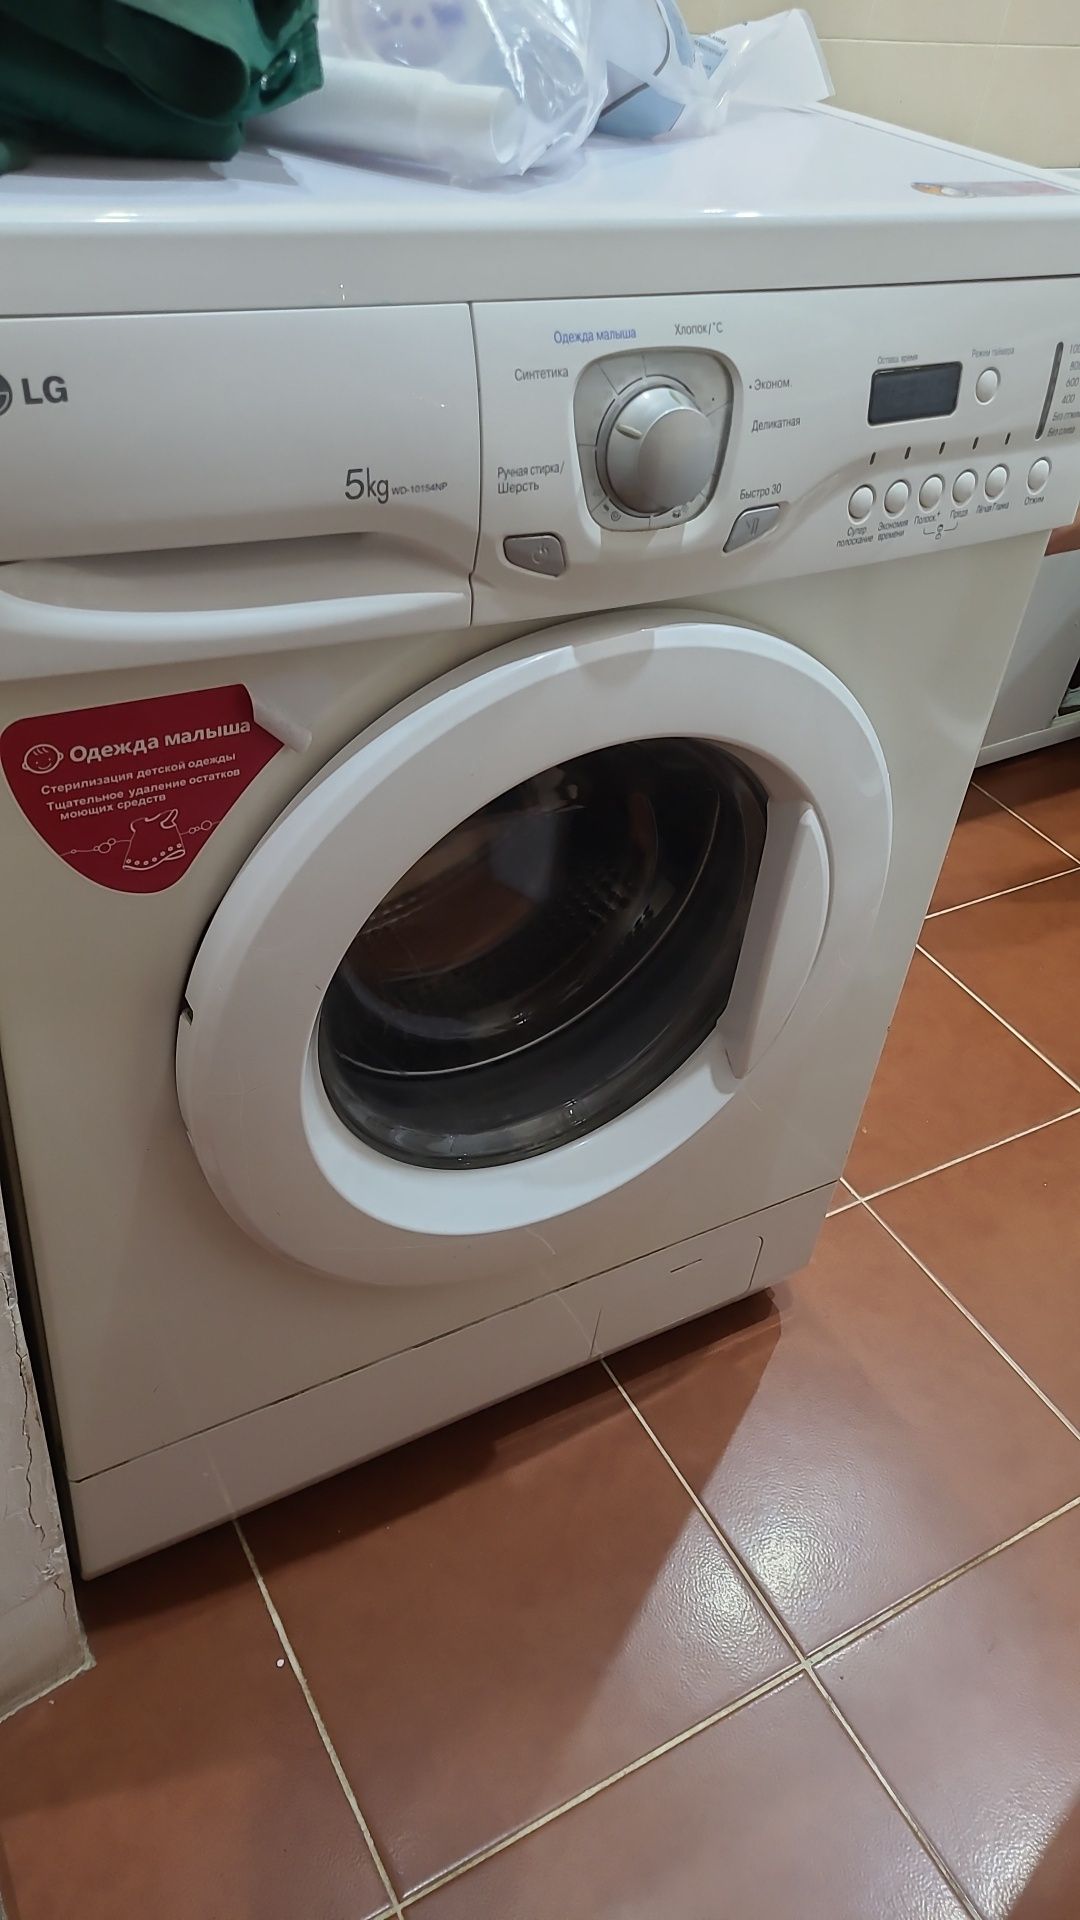 Срочно продается стиральная машина  LG, 5 кг. в хорошем состоянии